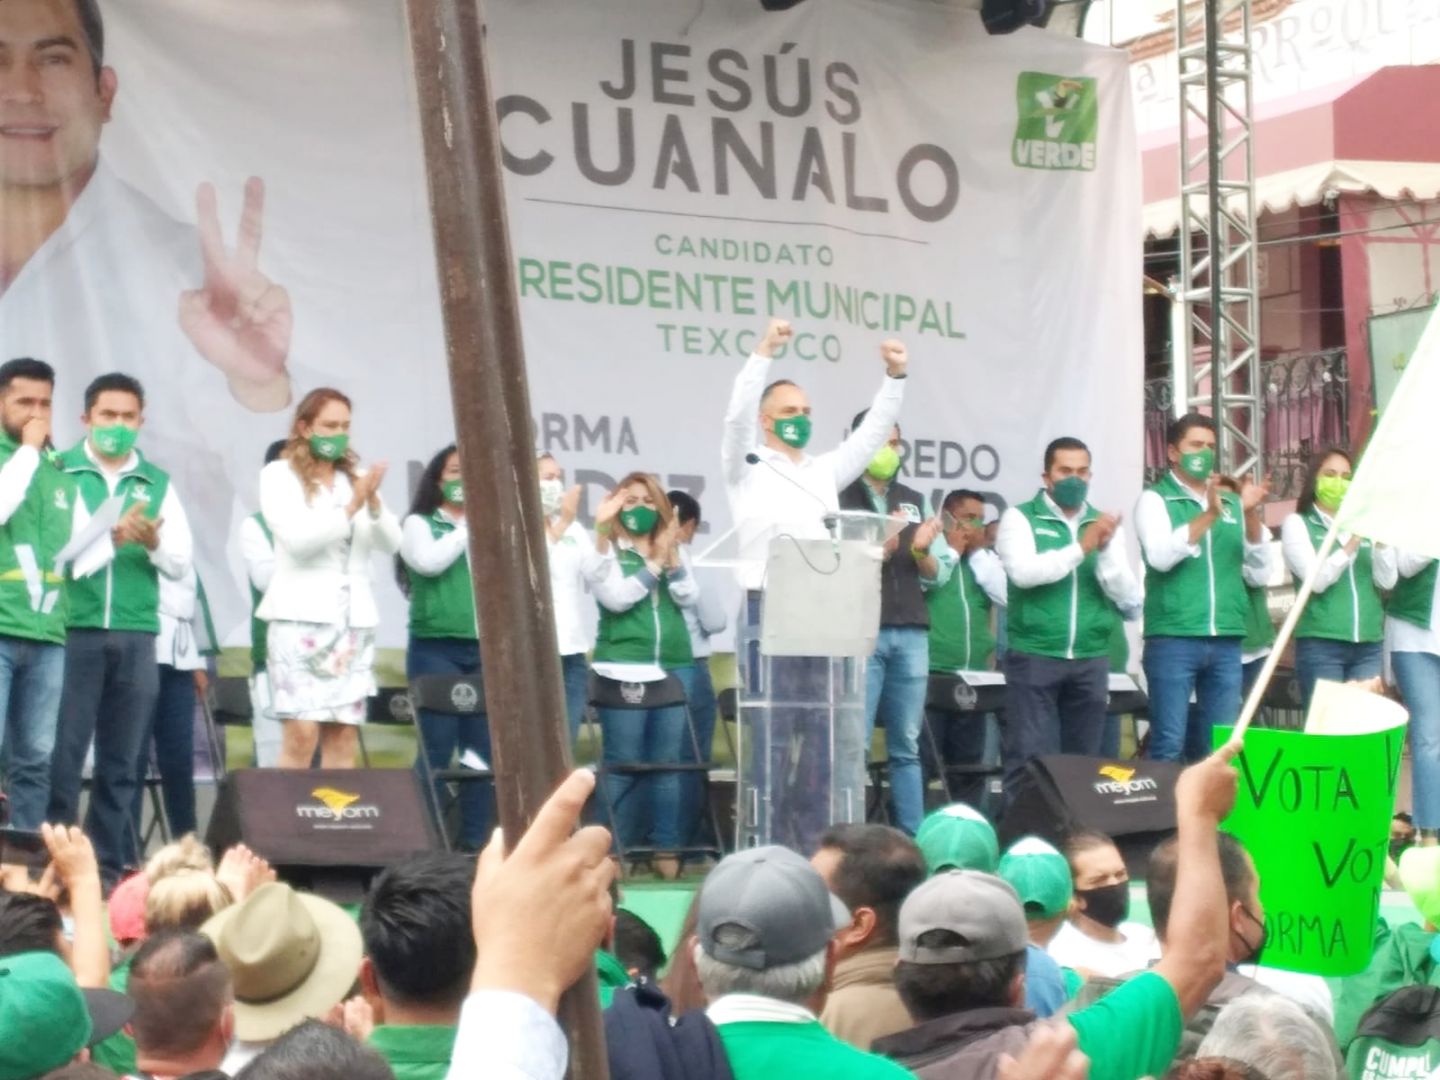 Cierra campaña en Texcoco Jesús Cuanalo, candidato a la alcaldía por el PVEM 